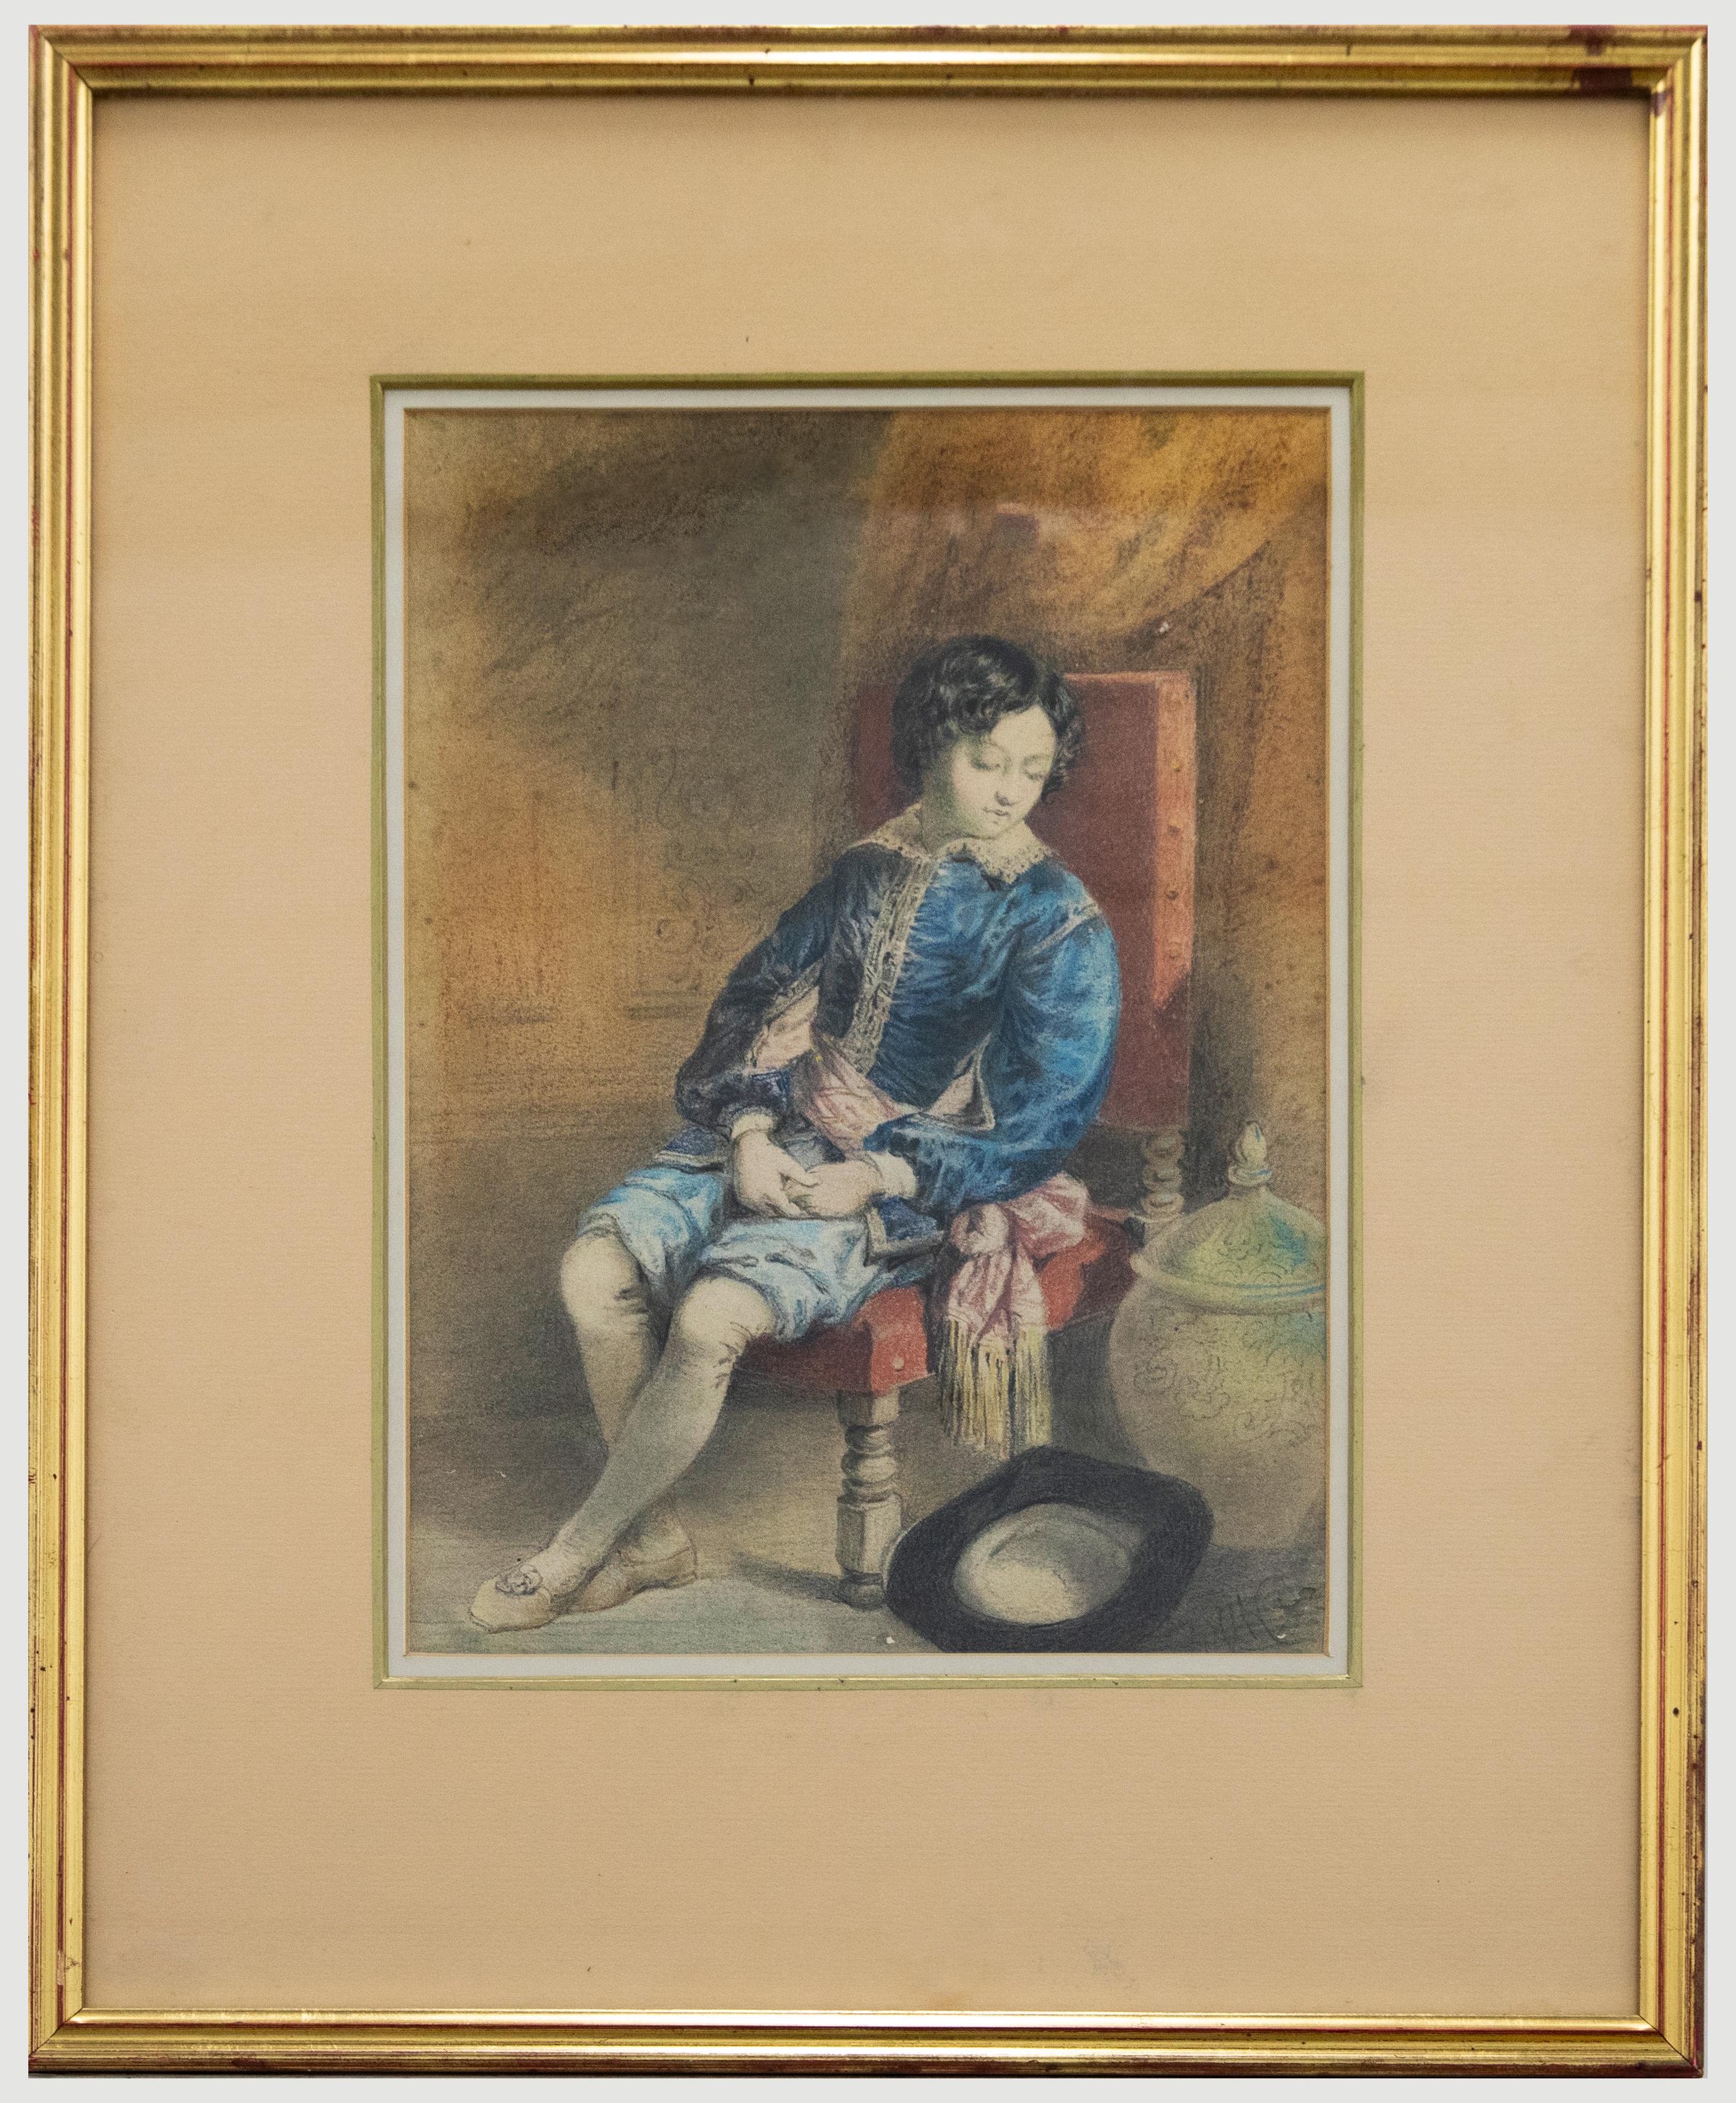 Eine bezaubernde Pastellstudie eines adligen Kindes aus dem 17. Jahrhundert, das auf einem roten Stuhl sitzt, neben dem wir etwas verdienen. Er blickt auf einen Hut auf dem Boden und trägt eine königsblaue Uniform. Unten rechts schwach signiert mit